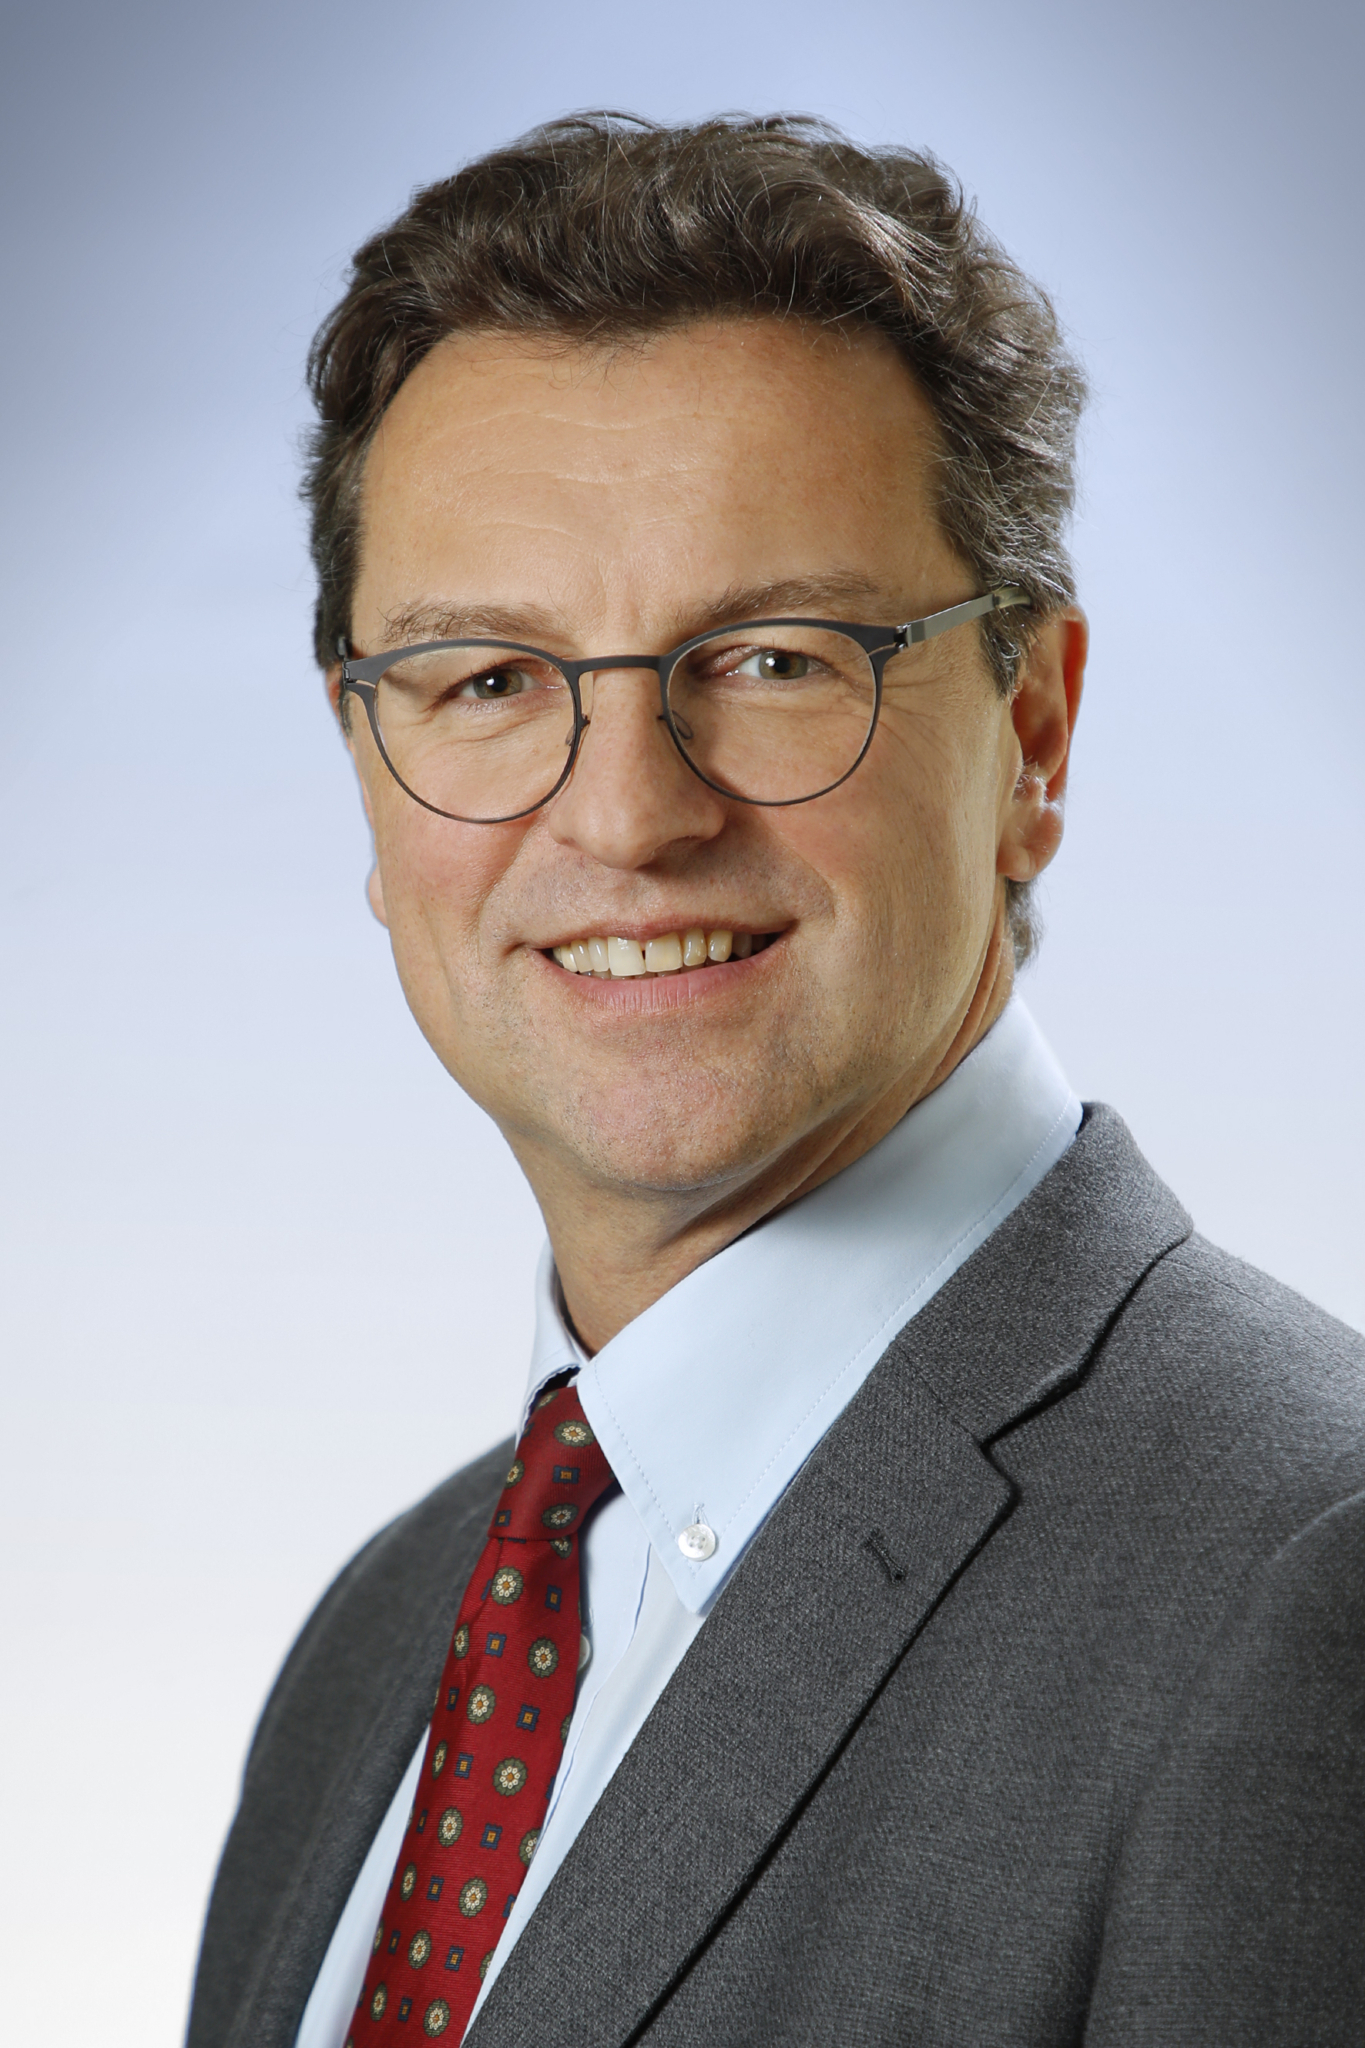 Foto Dr Harnoncourt, CEO des größten Krankenhausträgers in Oberösterreich